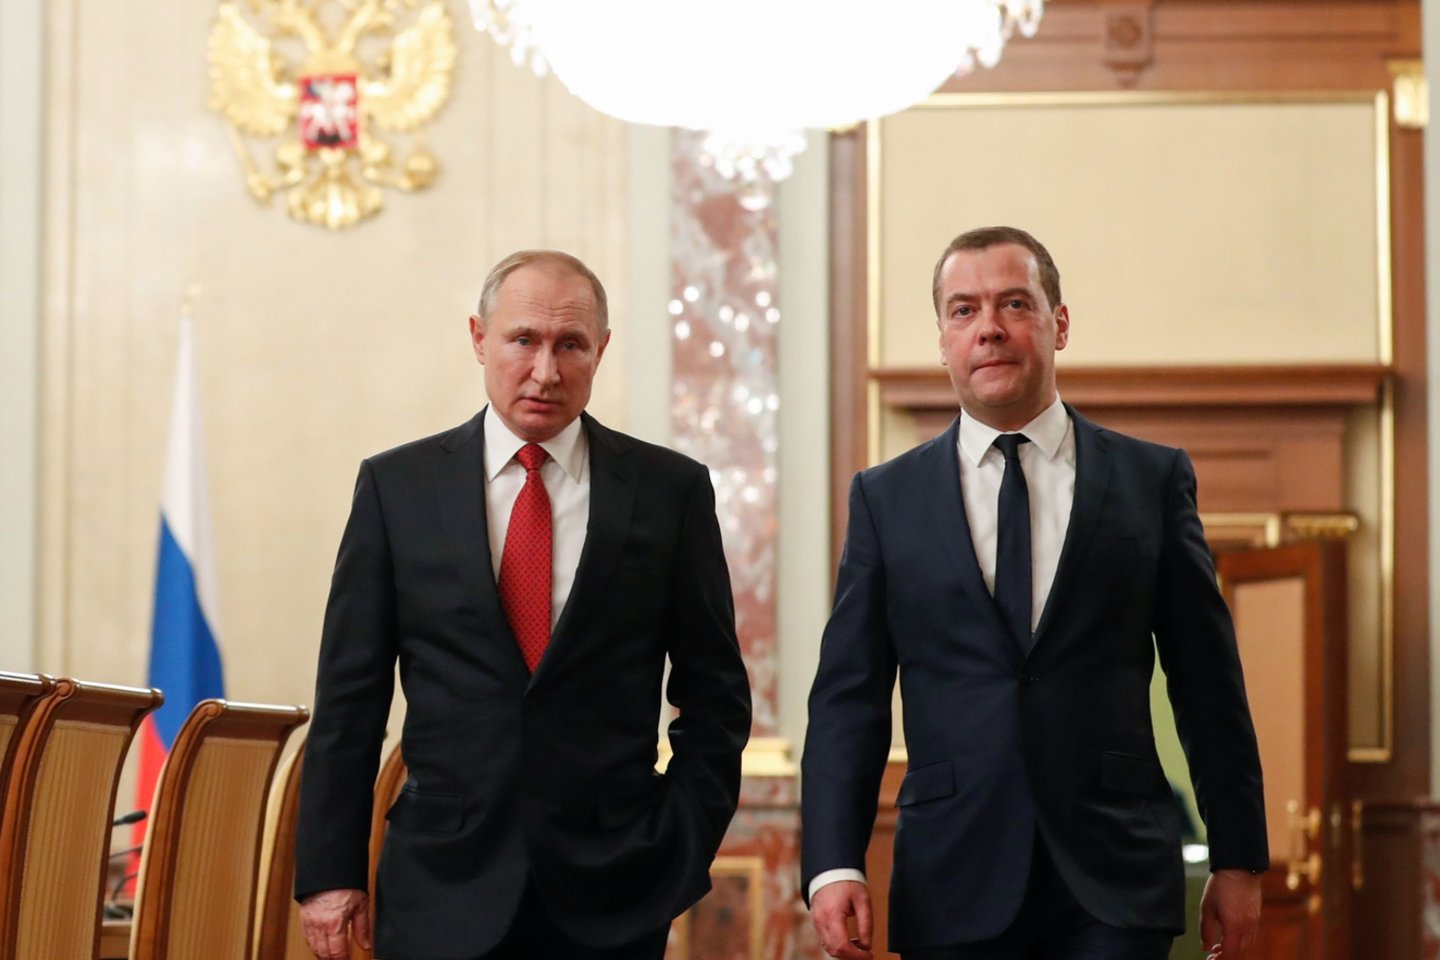  Vladimiras Putinas ir Dmitrijus Medvedevas.<br> AFP/Scanpix nuotr.